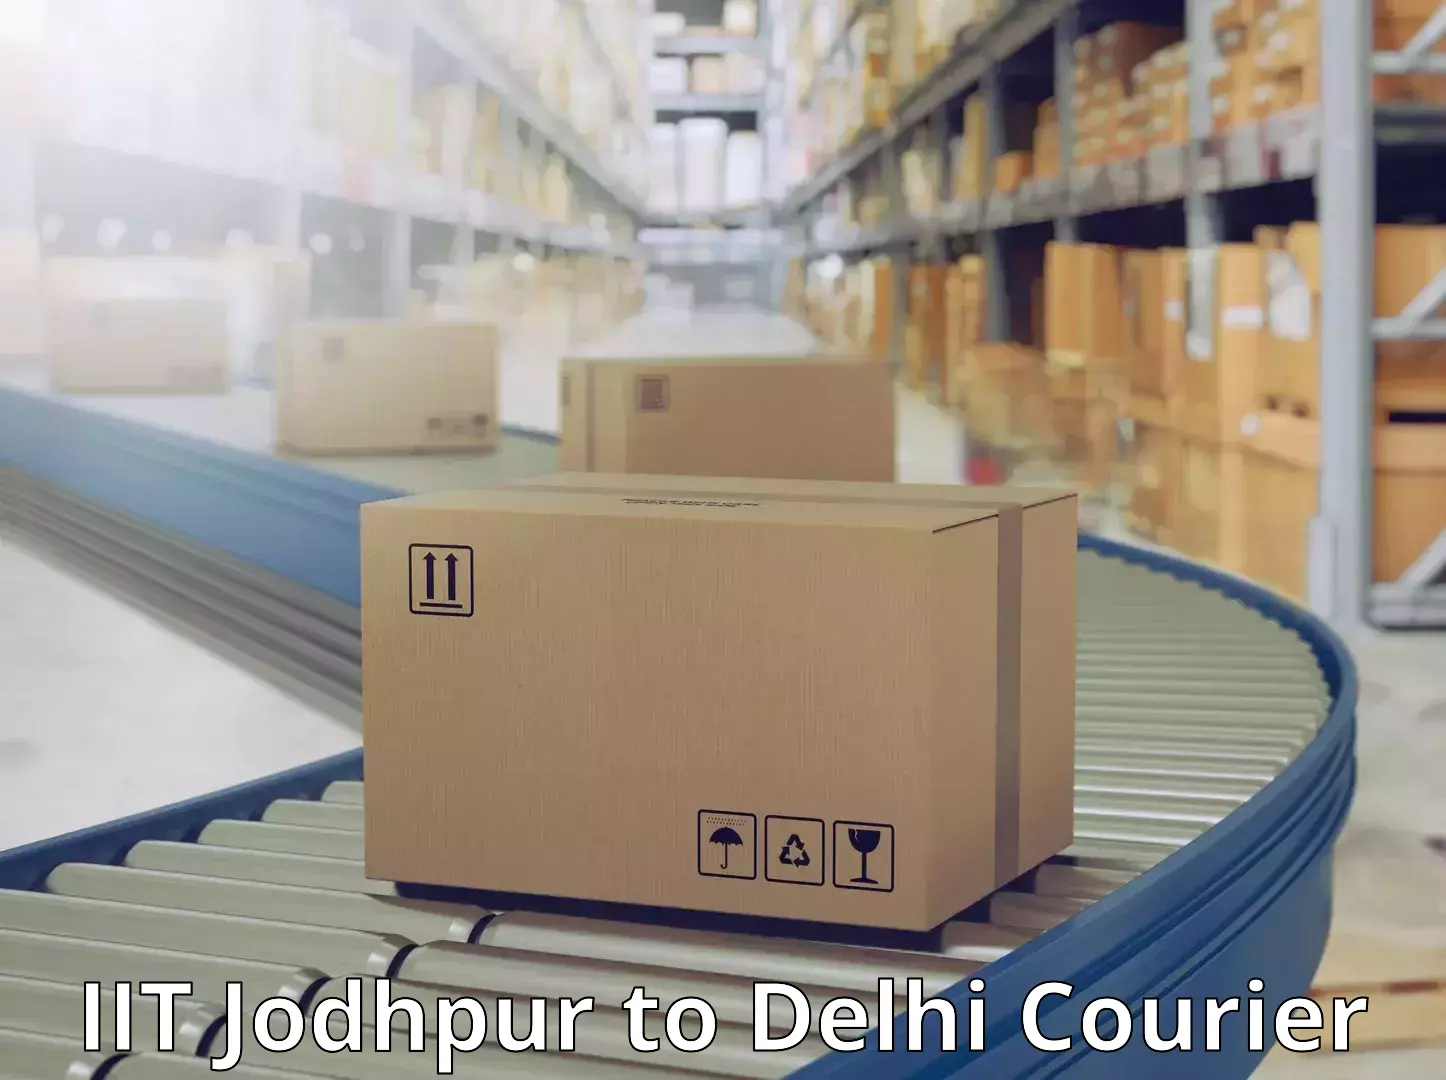 User-friendly courier app IIT Jodhpur to Jhilmil